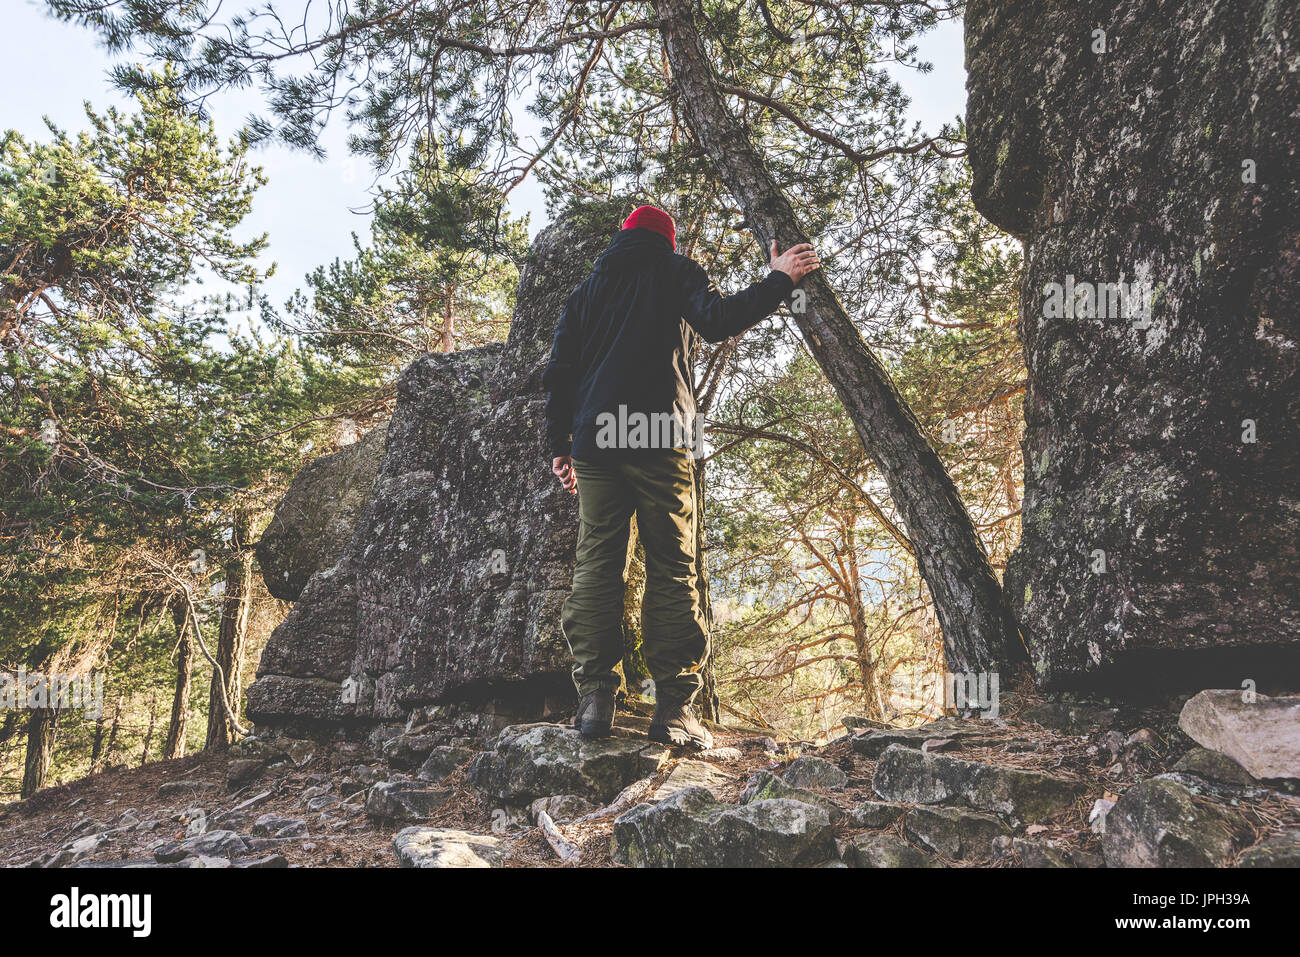 Wanderer auf den Felsen stehen und betrachtet einen schönen Berg-Landschaft - Fernweh Reisekonzept mit sportlichen Menschen auf der Exkursion in wilder Natur Stockfoto